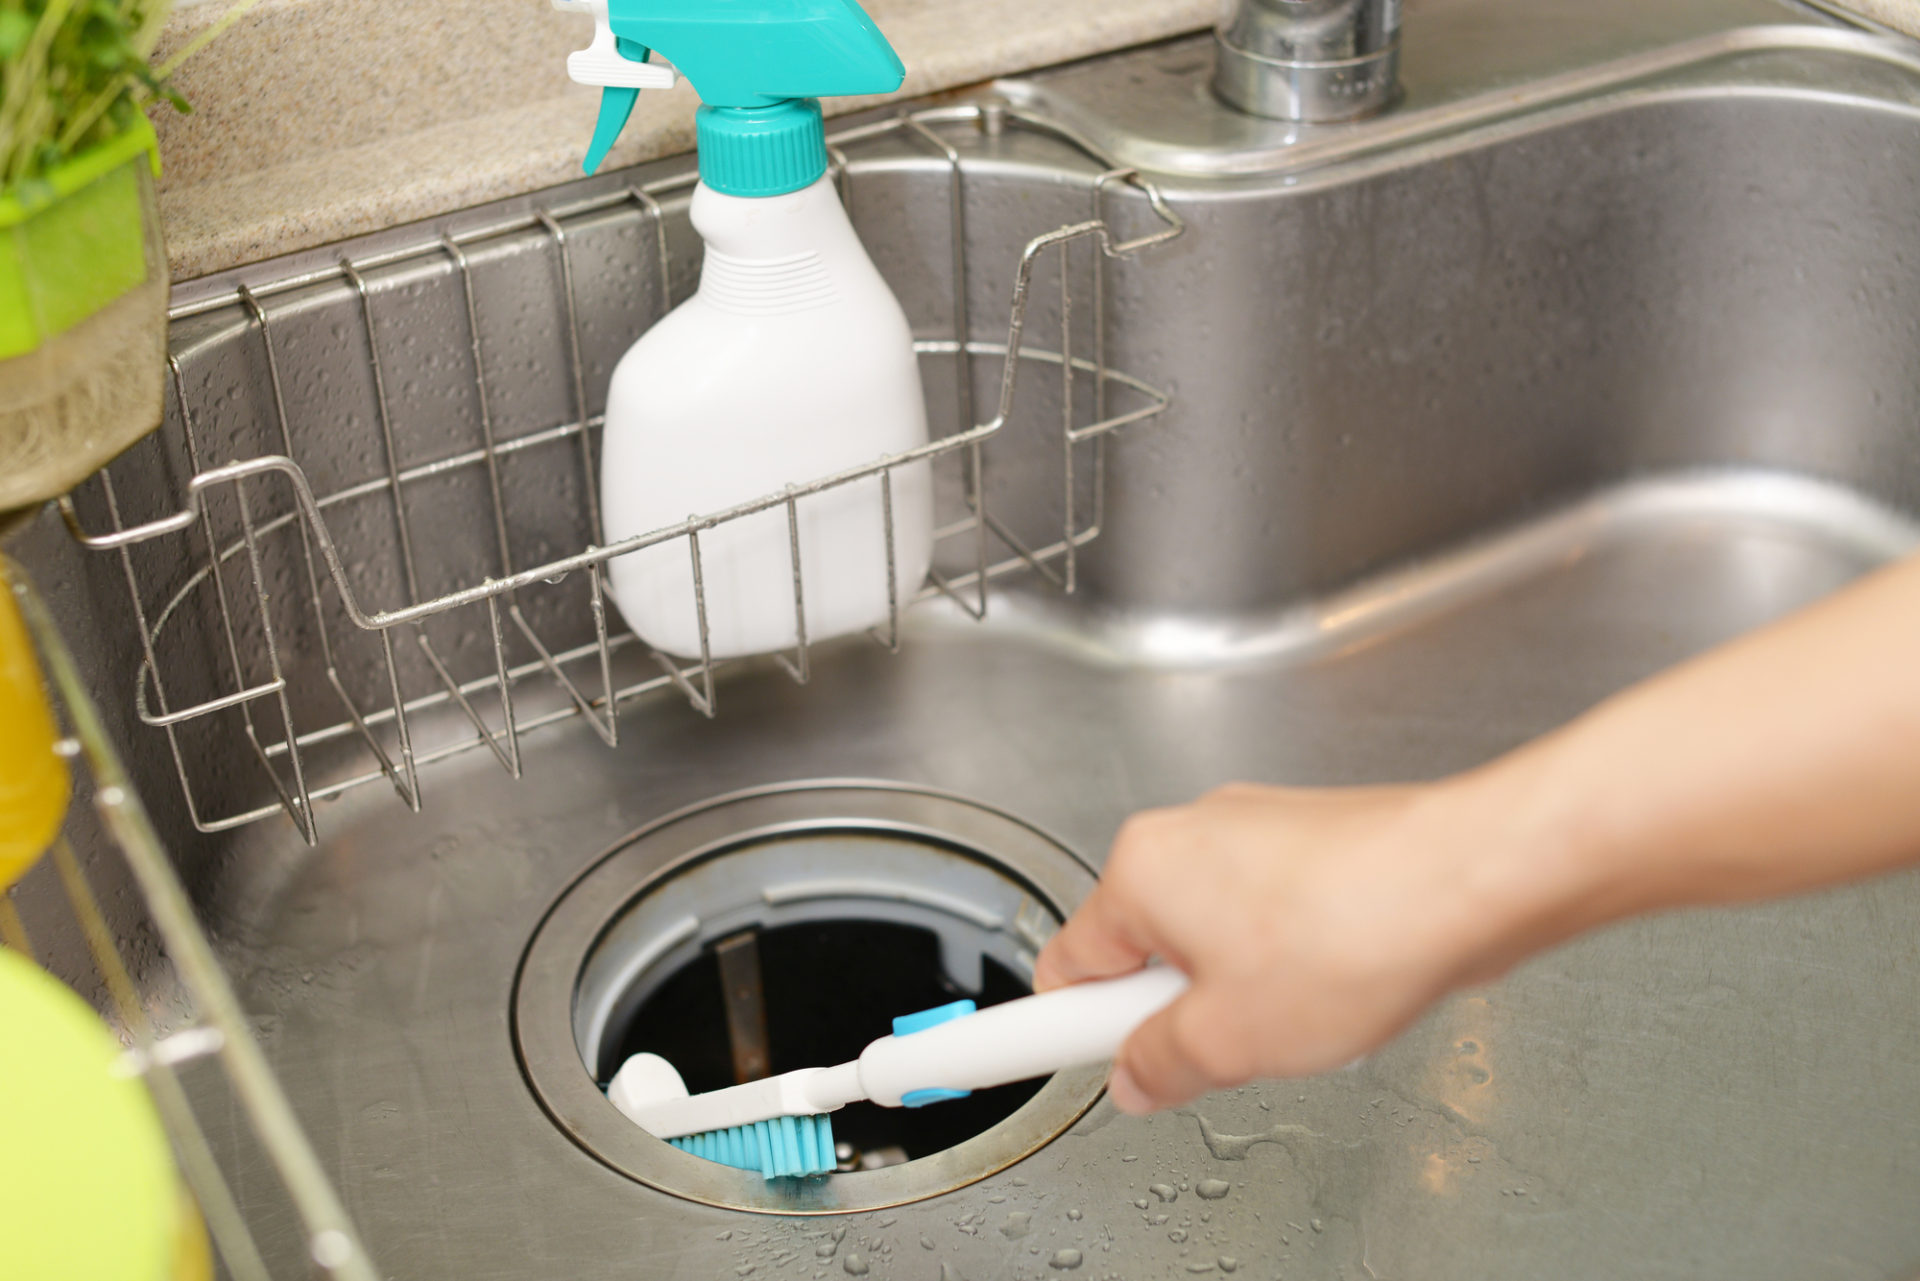 キッチンの排水溝の臭いをとる方法 臭う原因と普段のメンテナンス方法 コラム